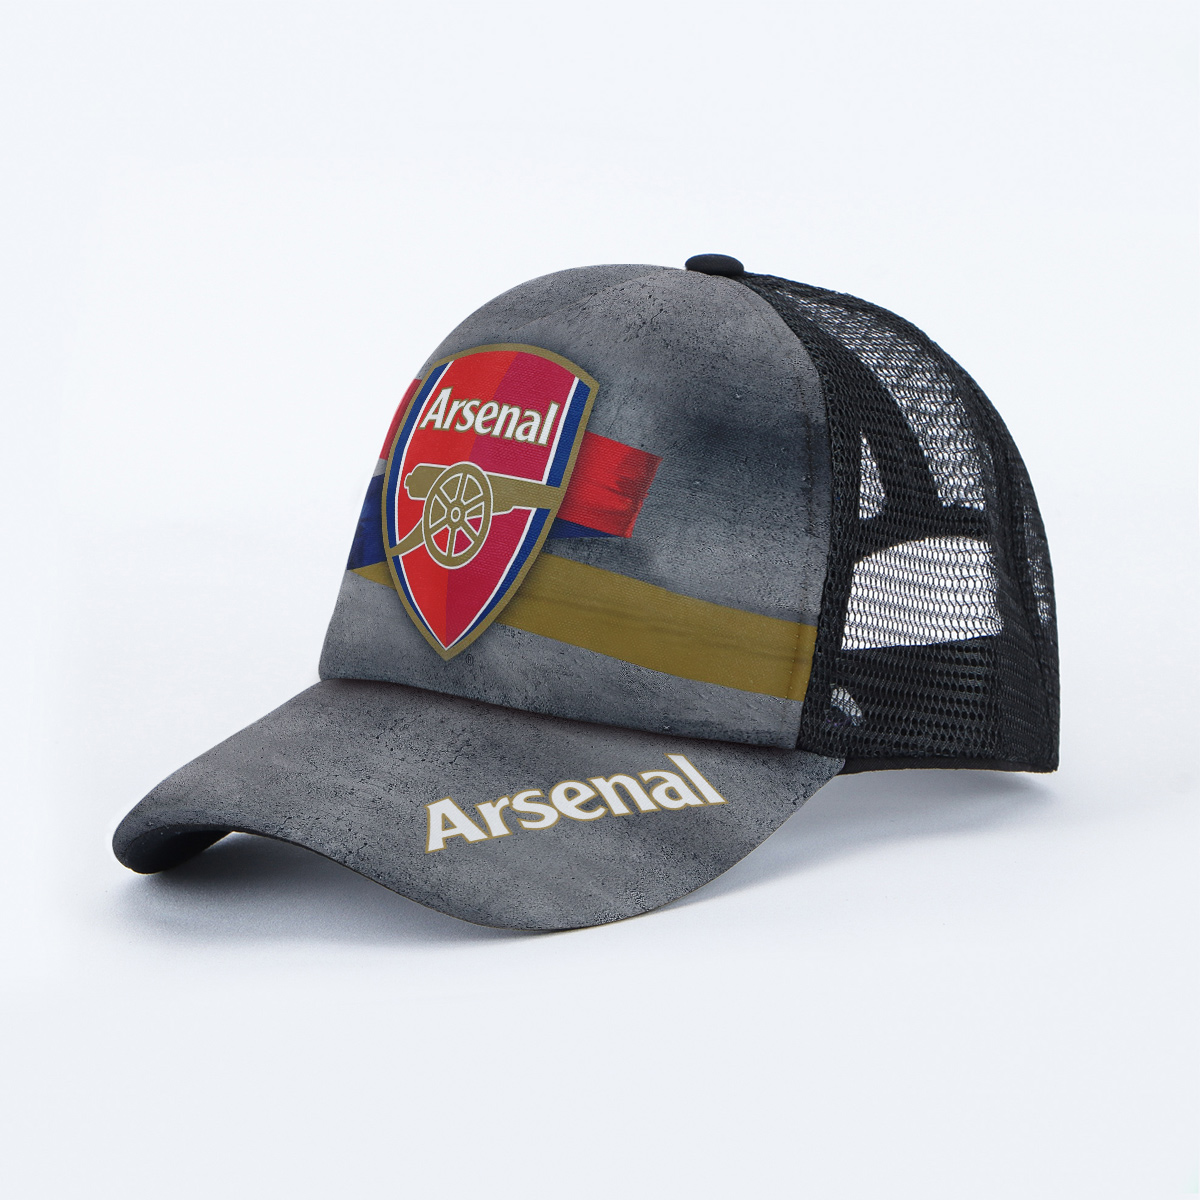 Arsenal阿森纳网帽子足球周边男纪念品球迷助威用品欧冠俱乐部